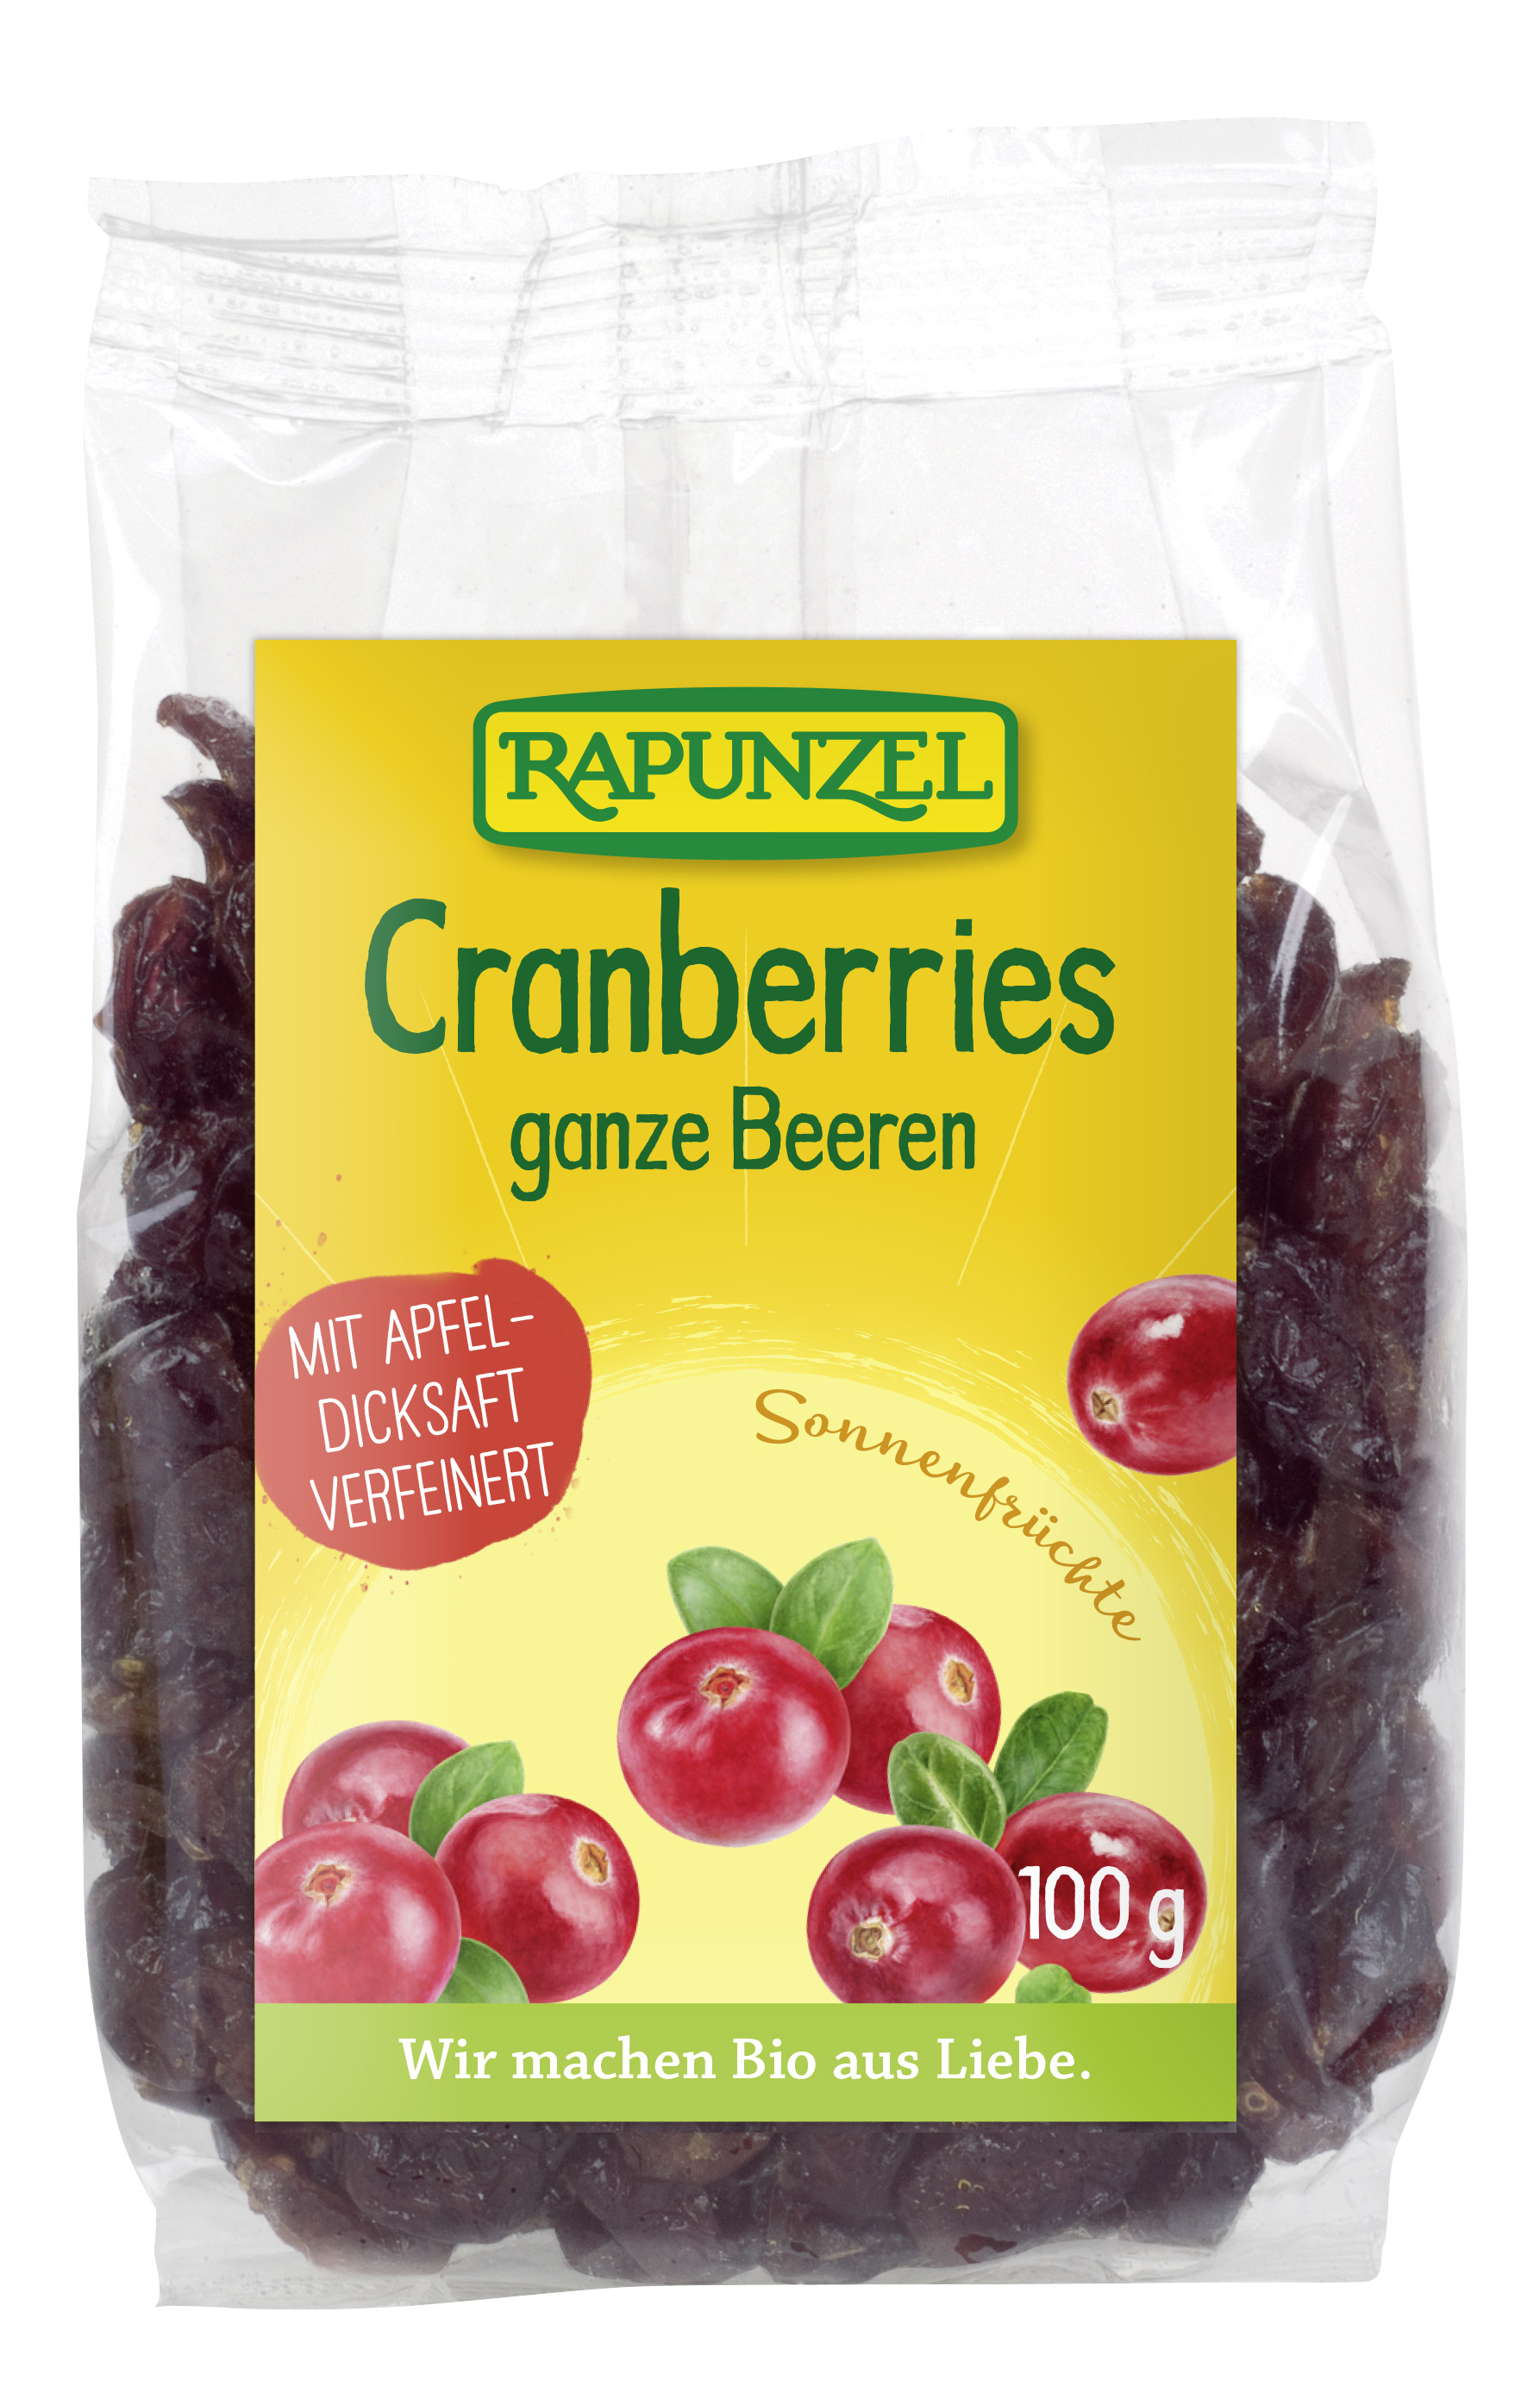 Cranberries, ganze Beeren 100g 